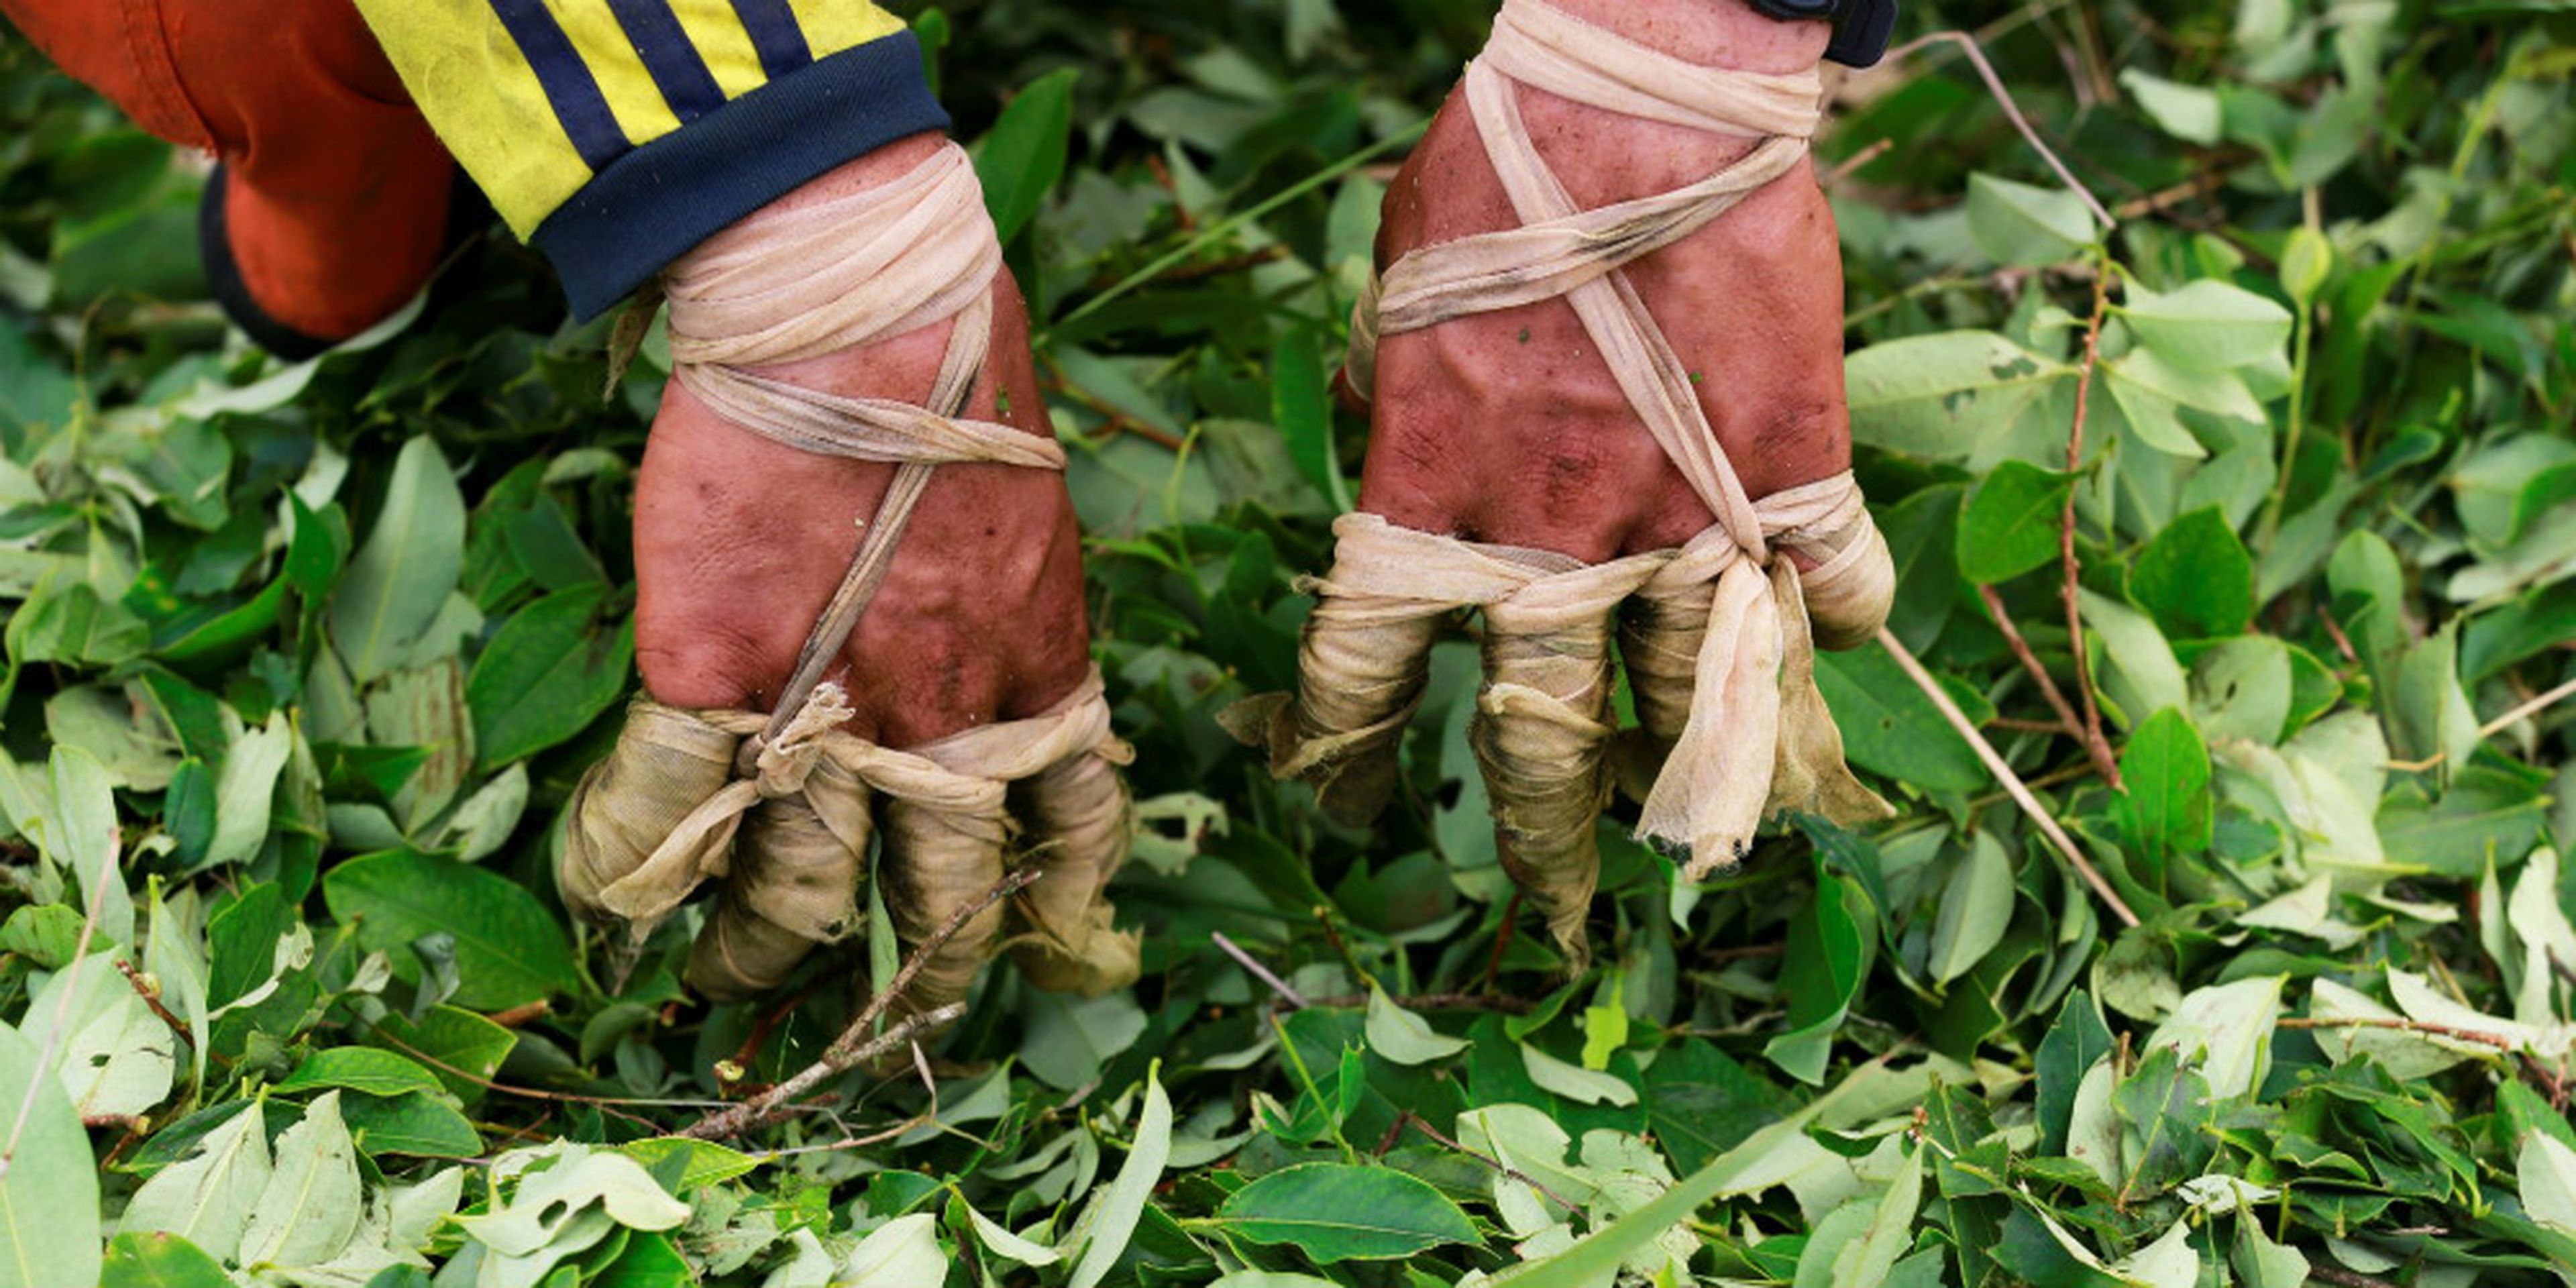 Los dedos vendados de un "raspachín", un trabajador que recolecta hojas de coca, durante la cosecha en una pequeña plantación en Guayabero (provincia de Guaviare, Colombia).